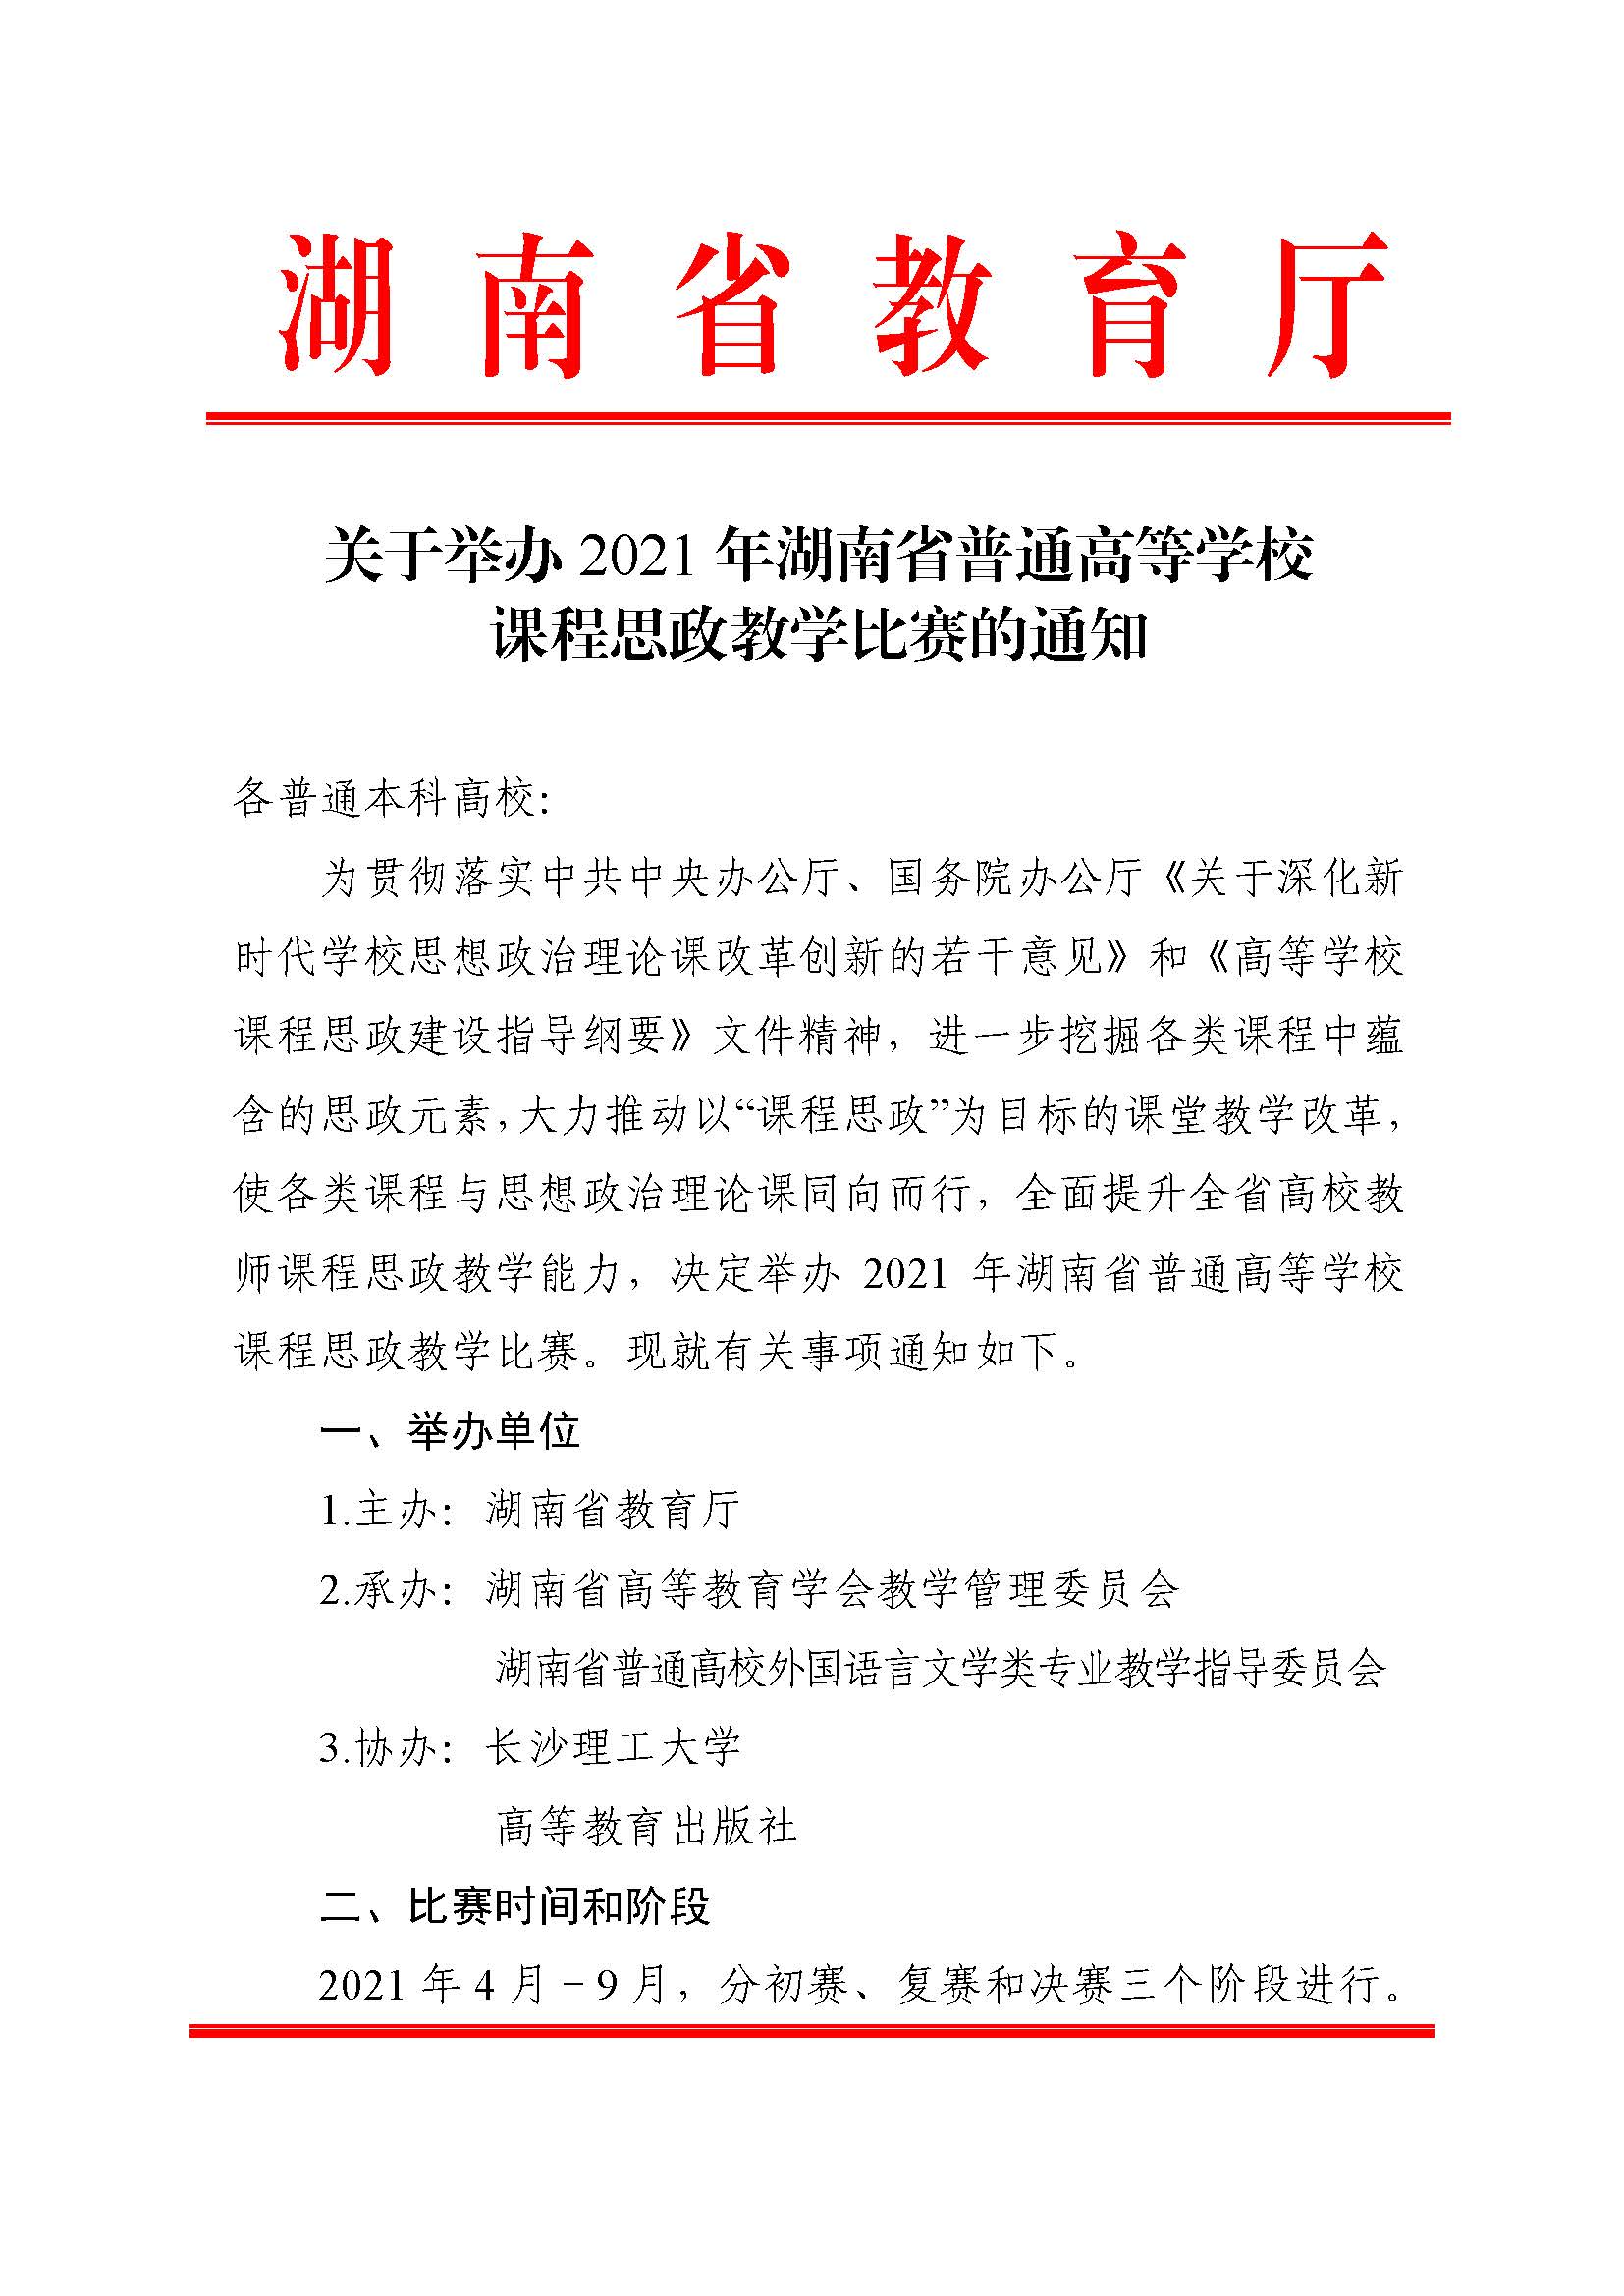 关于举办2021年湖南省普通高等学校课程思政教学比赛的通知_页面_01.jpg